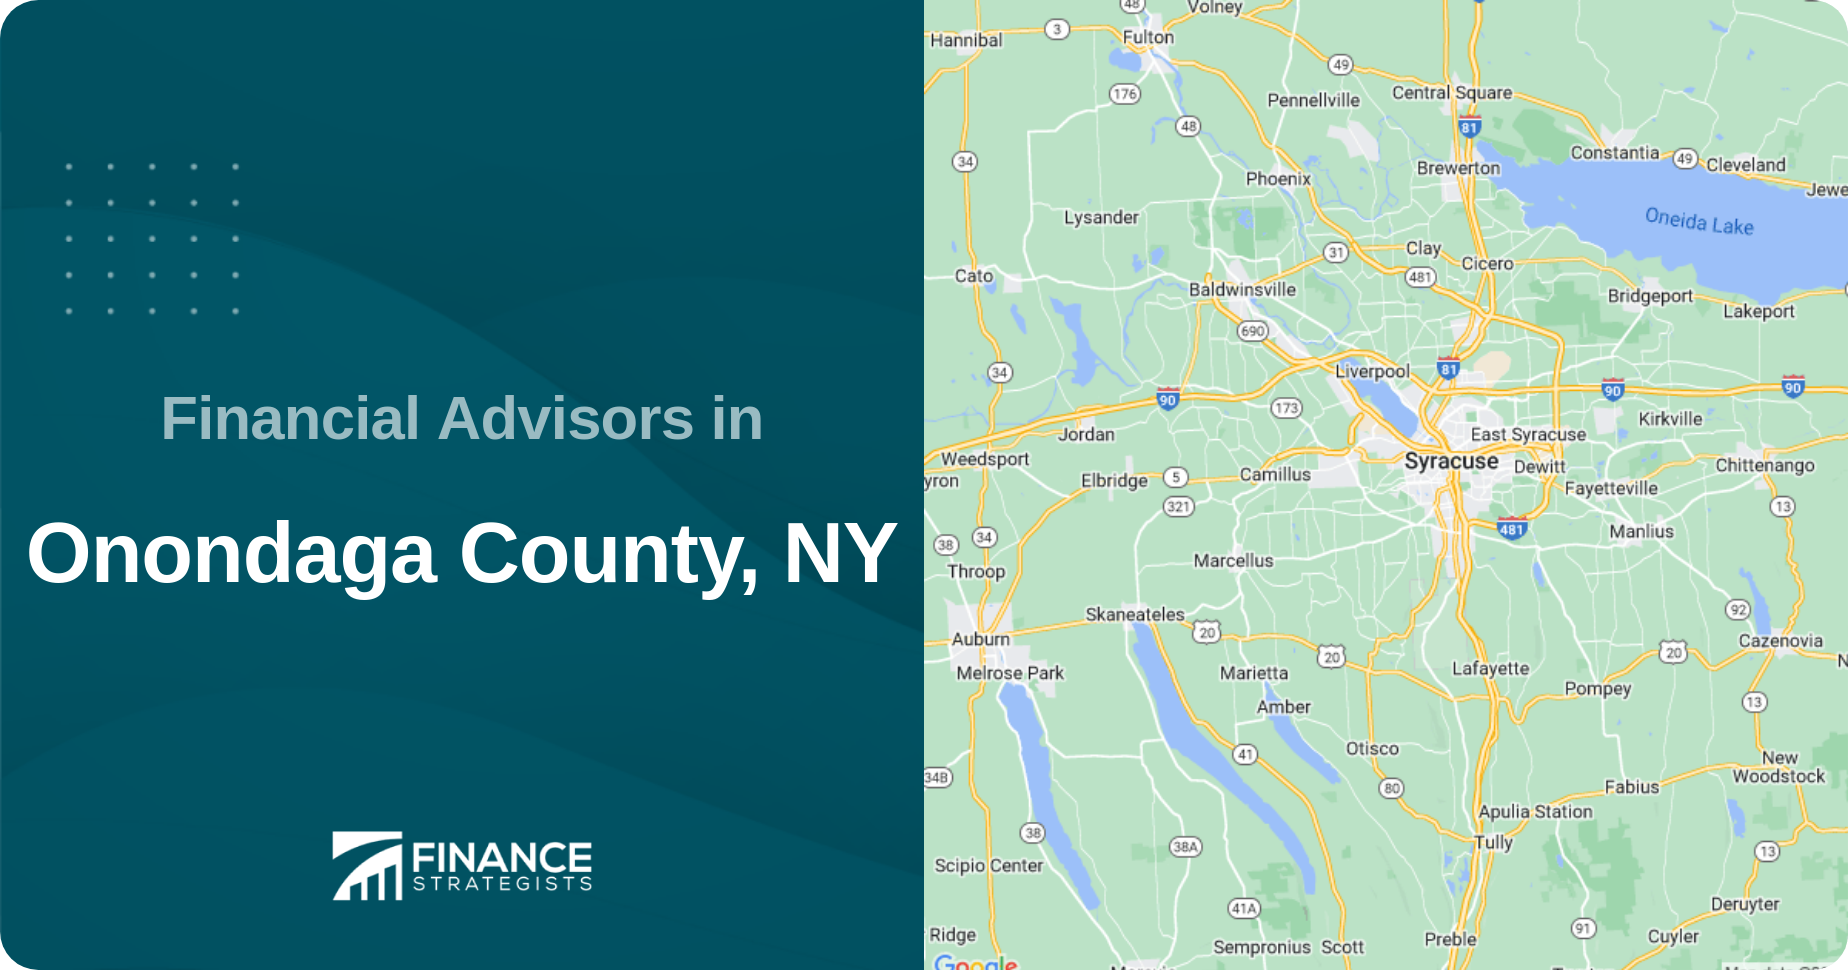 Financial Advisors in Onondaga County, NY